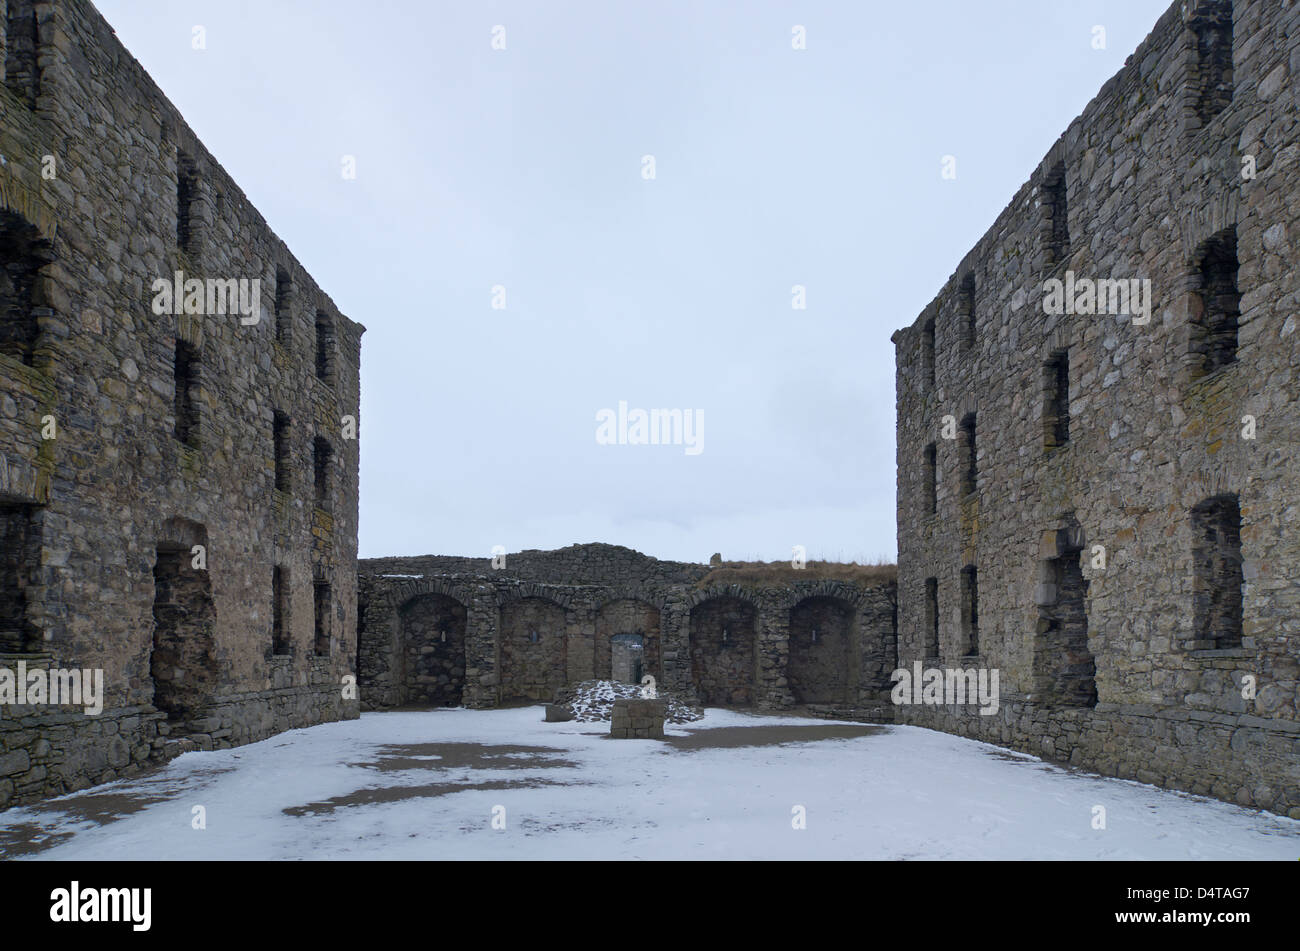 Ruinas de Ruthven Barracks, región de tierras altas, Escocia Foto de stock